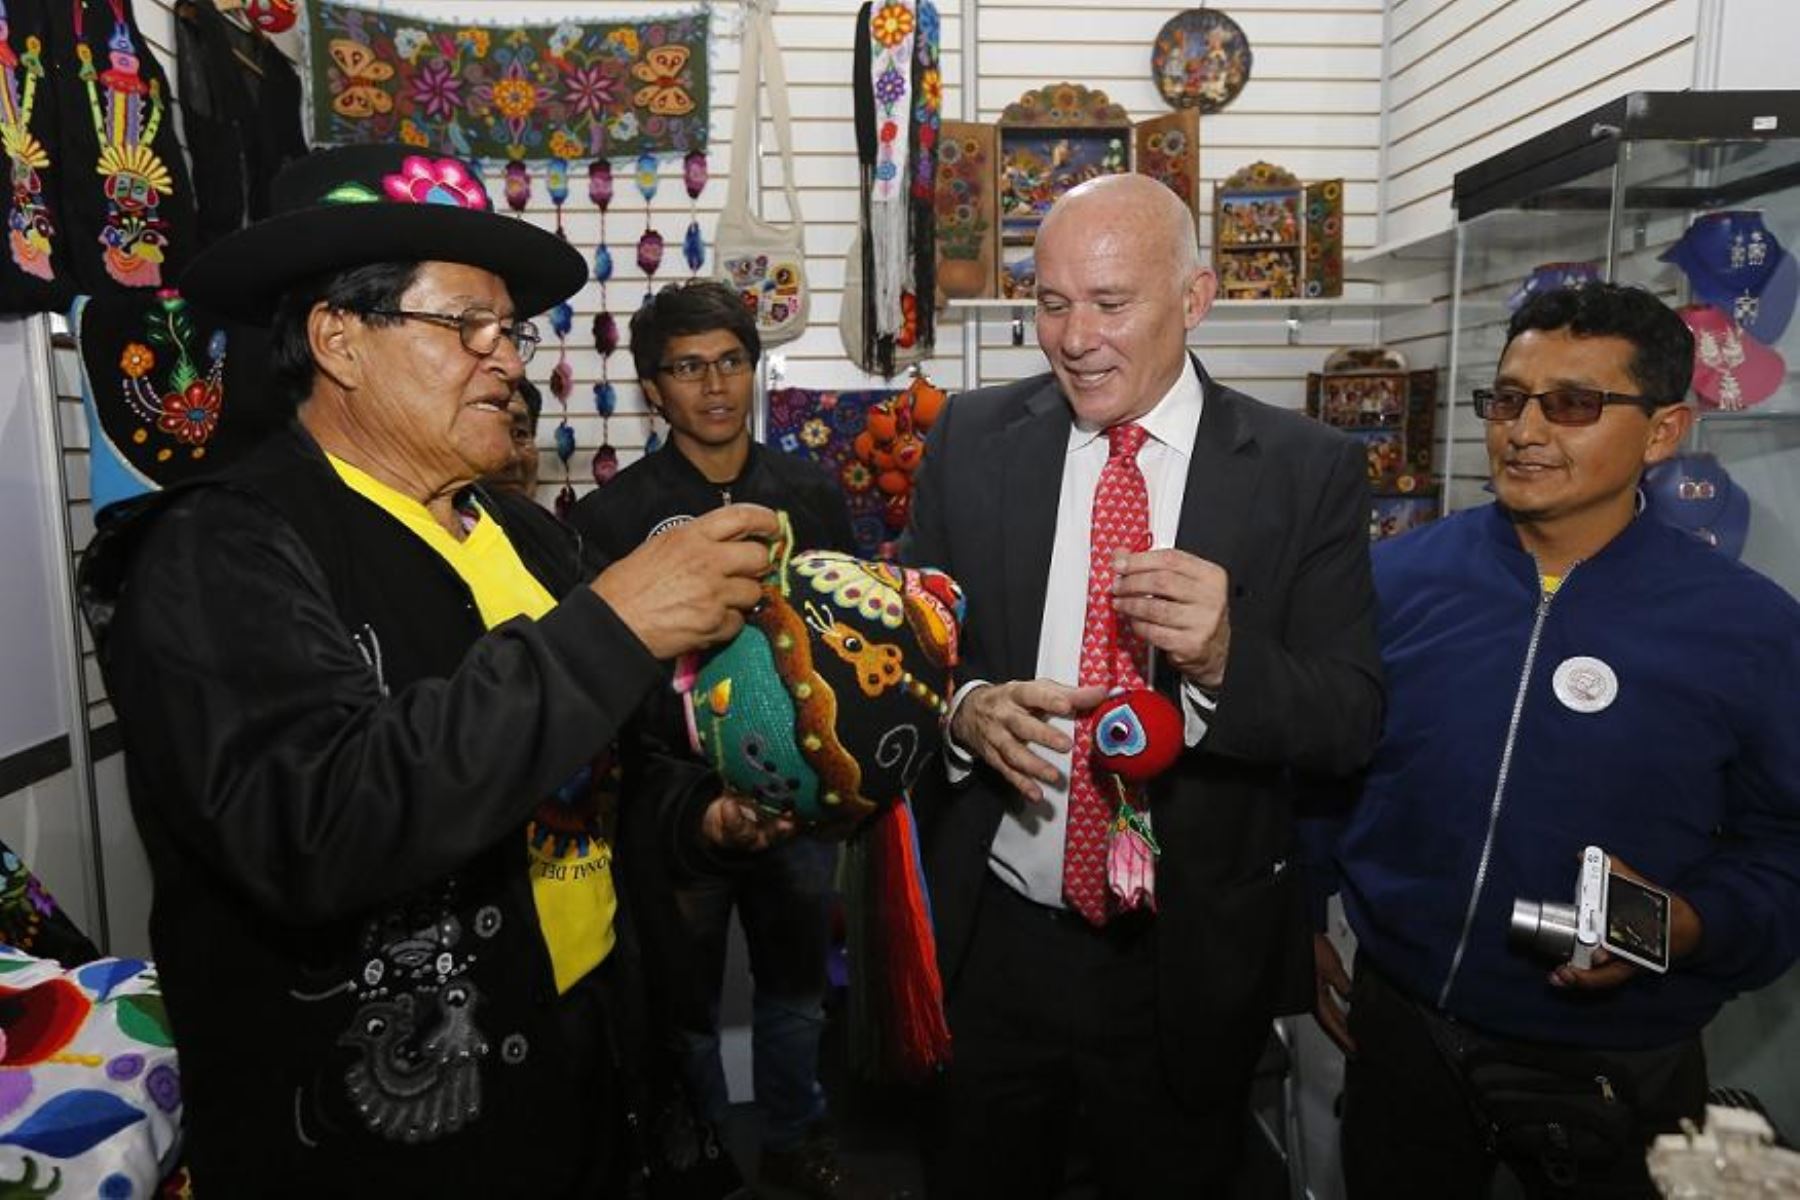 MInistro de Comercio Exterior y Turismo, Eduardo Ferreyros, aprecia los trabajos de los artesanos en la Feria Nacional "De Nuestras Manos". Foto: Cortesía Mincetur.